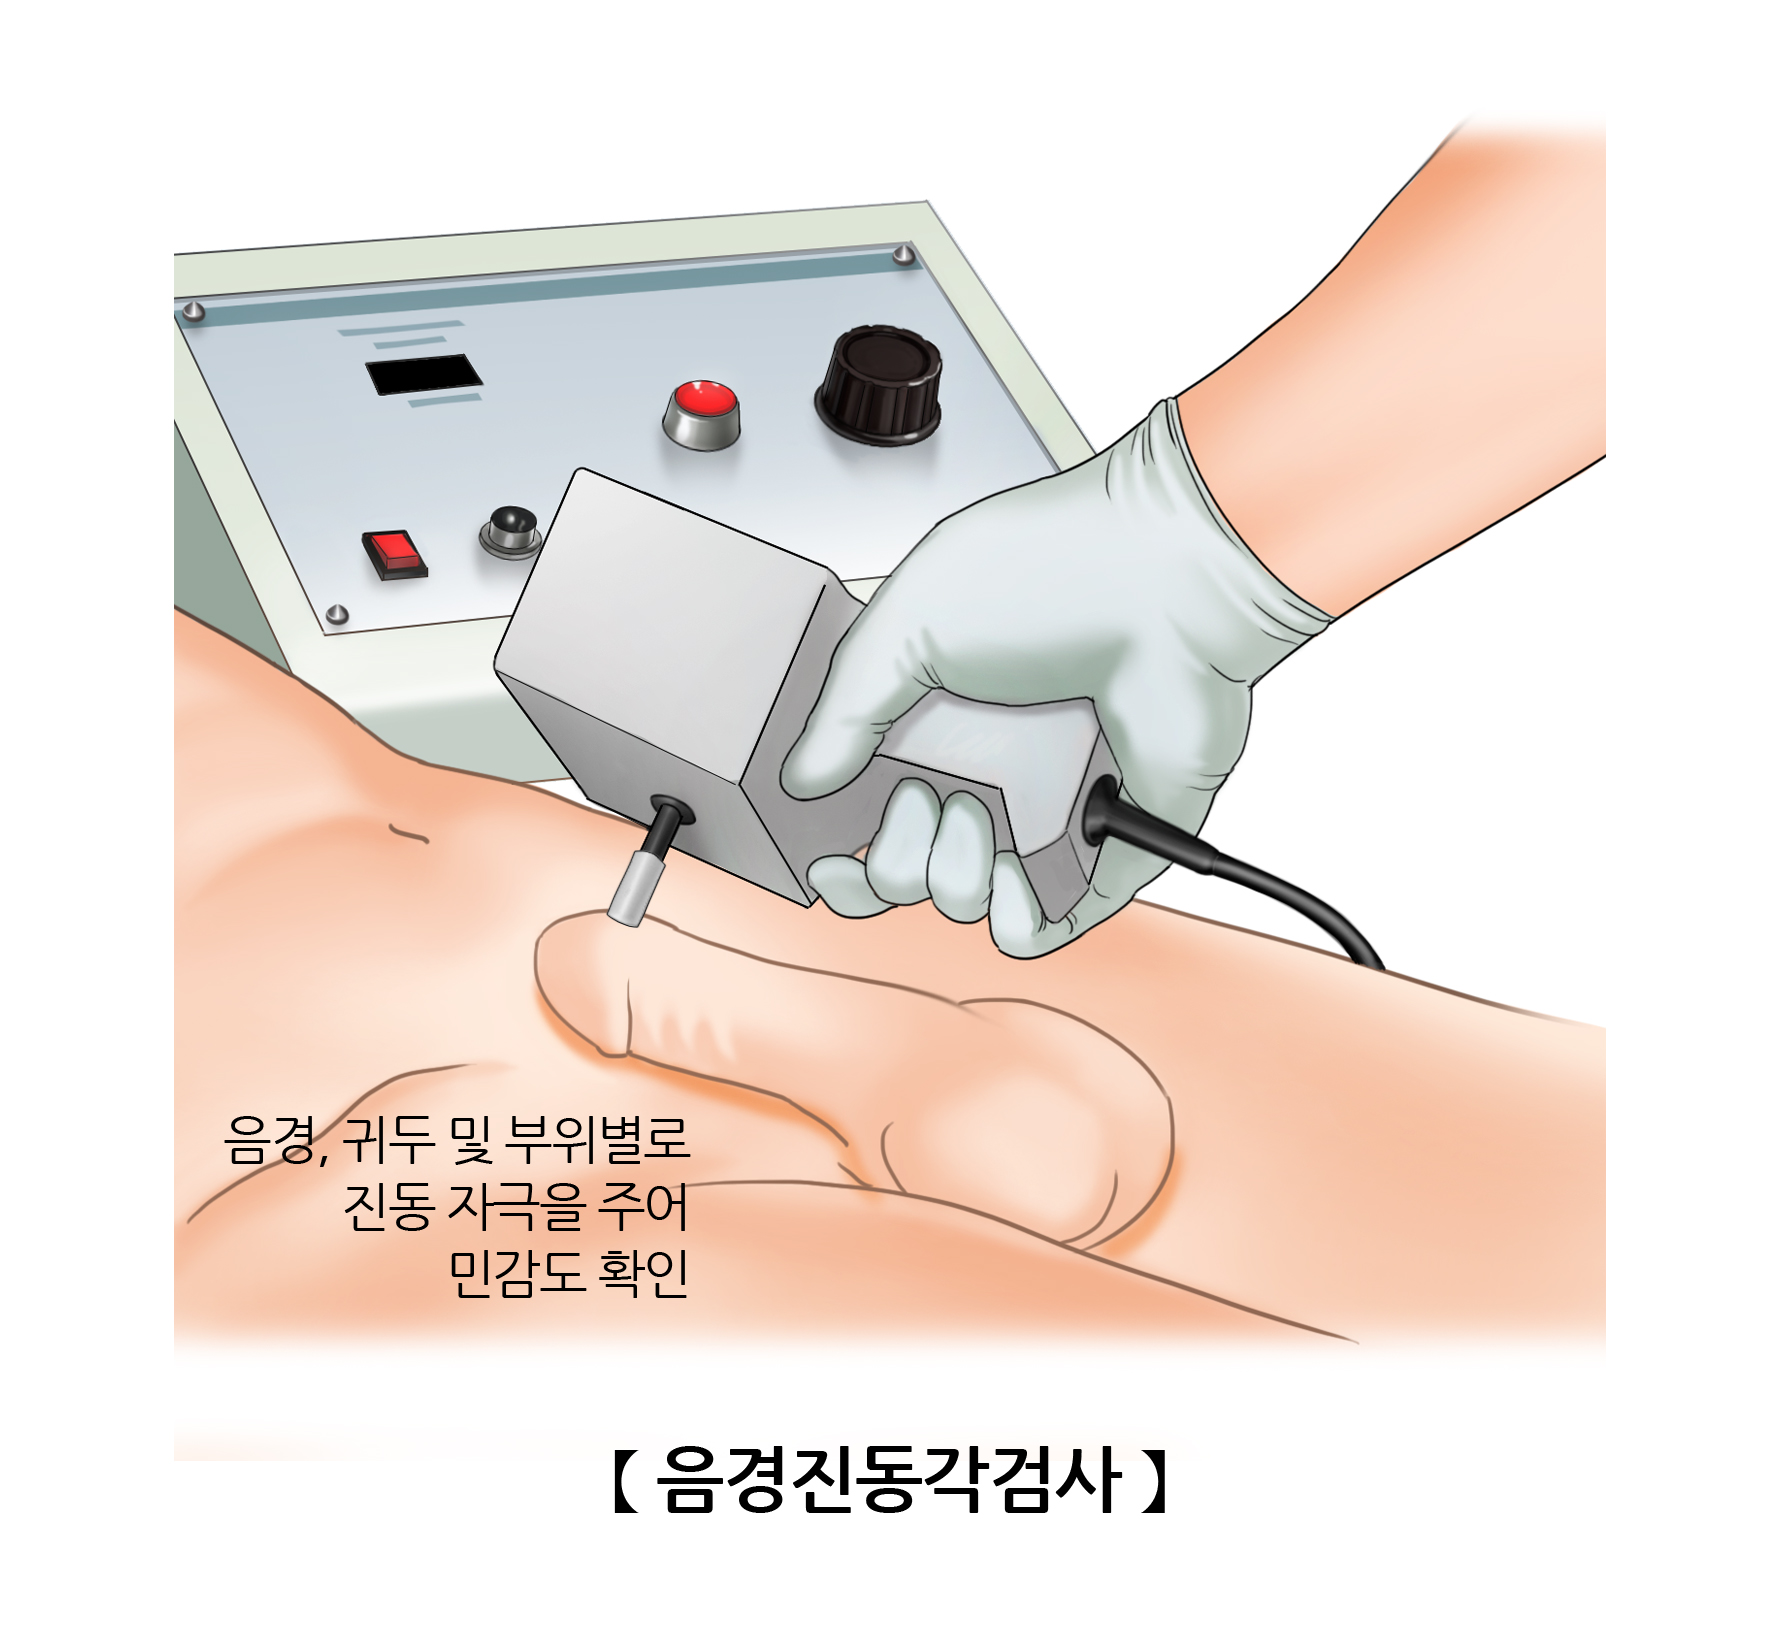 검사/시술/수술정보 | 의료정보 | 건강정보 | 서울아산병원